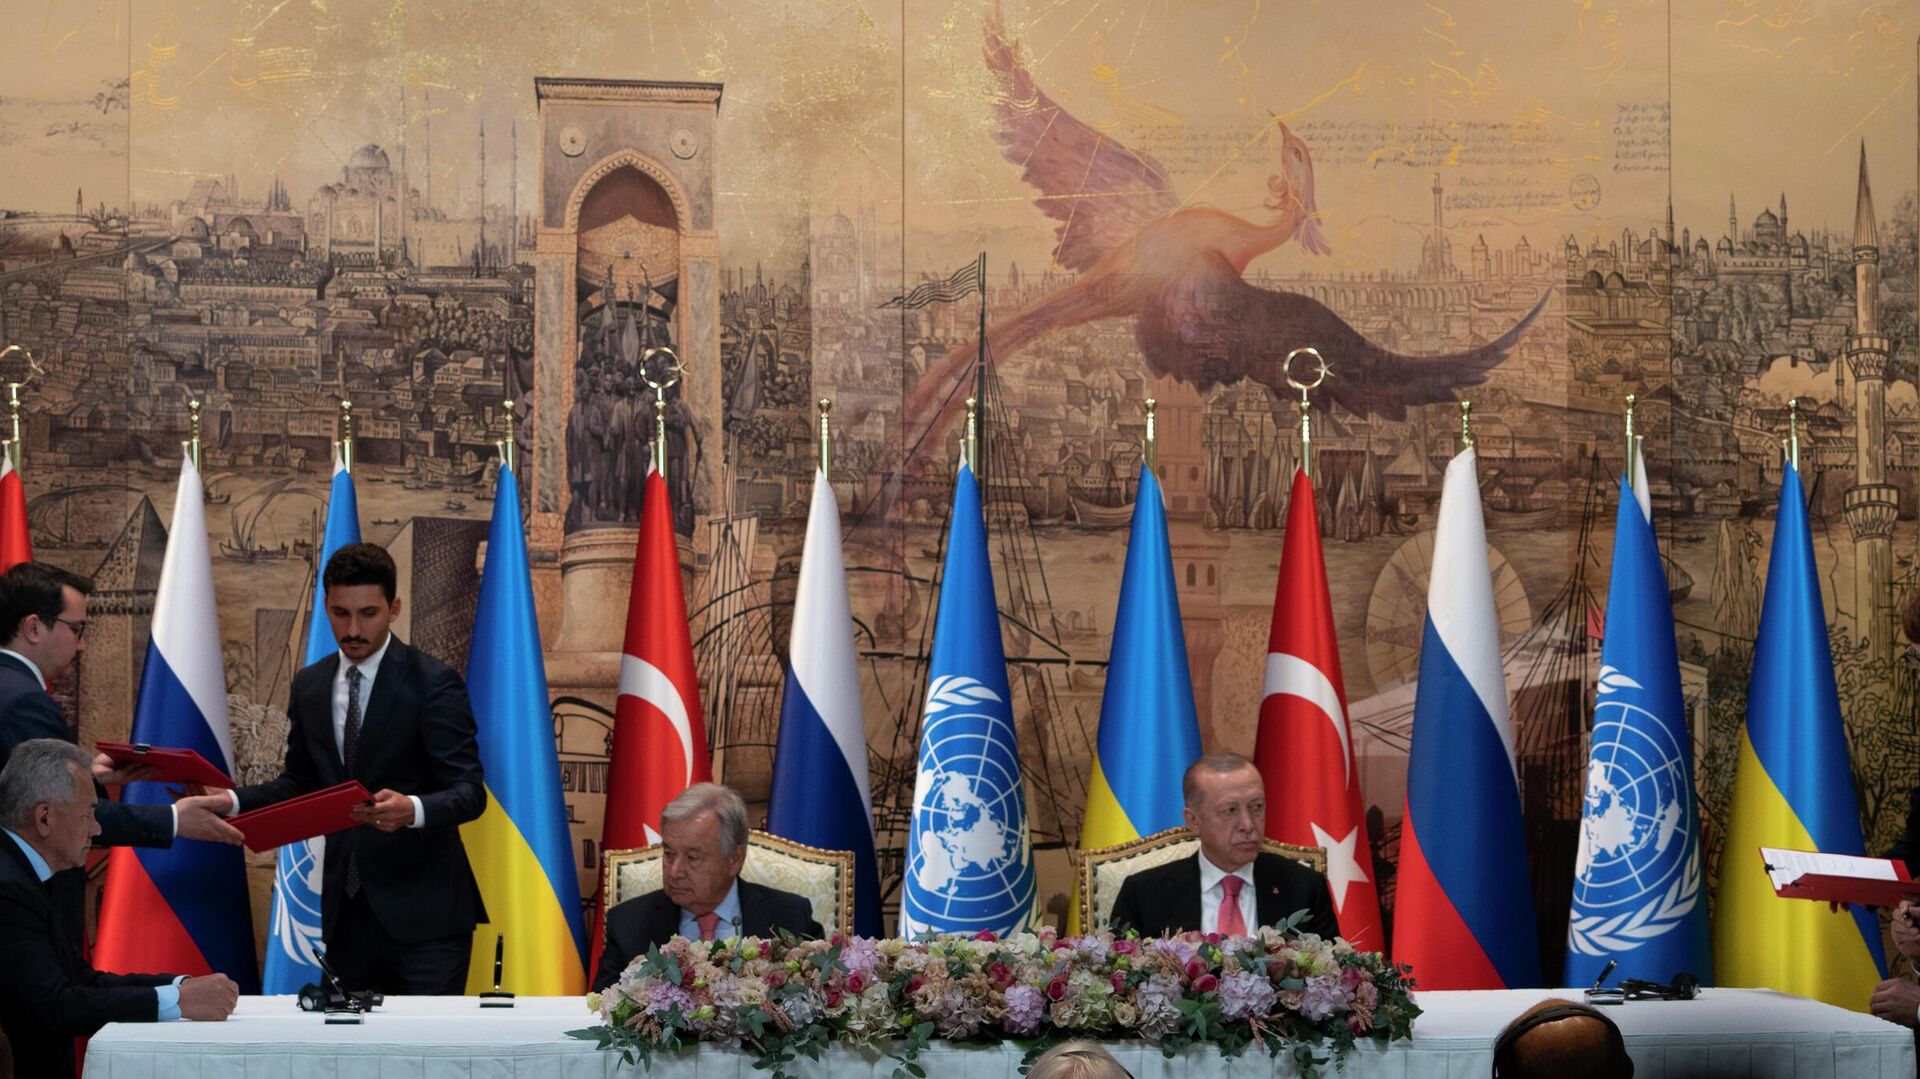 Генеральный секретарь ООН Антониу Гутерриш и президент Турции Реджеп Тайип Эрдоган на церемонии подписания продуктовой сделки в Стамбуле - РИА Новости, 1920, 23.07.2022